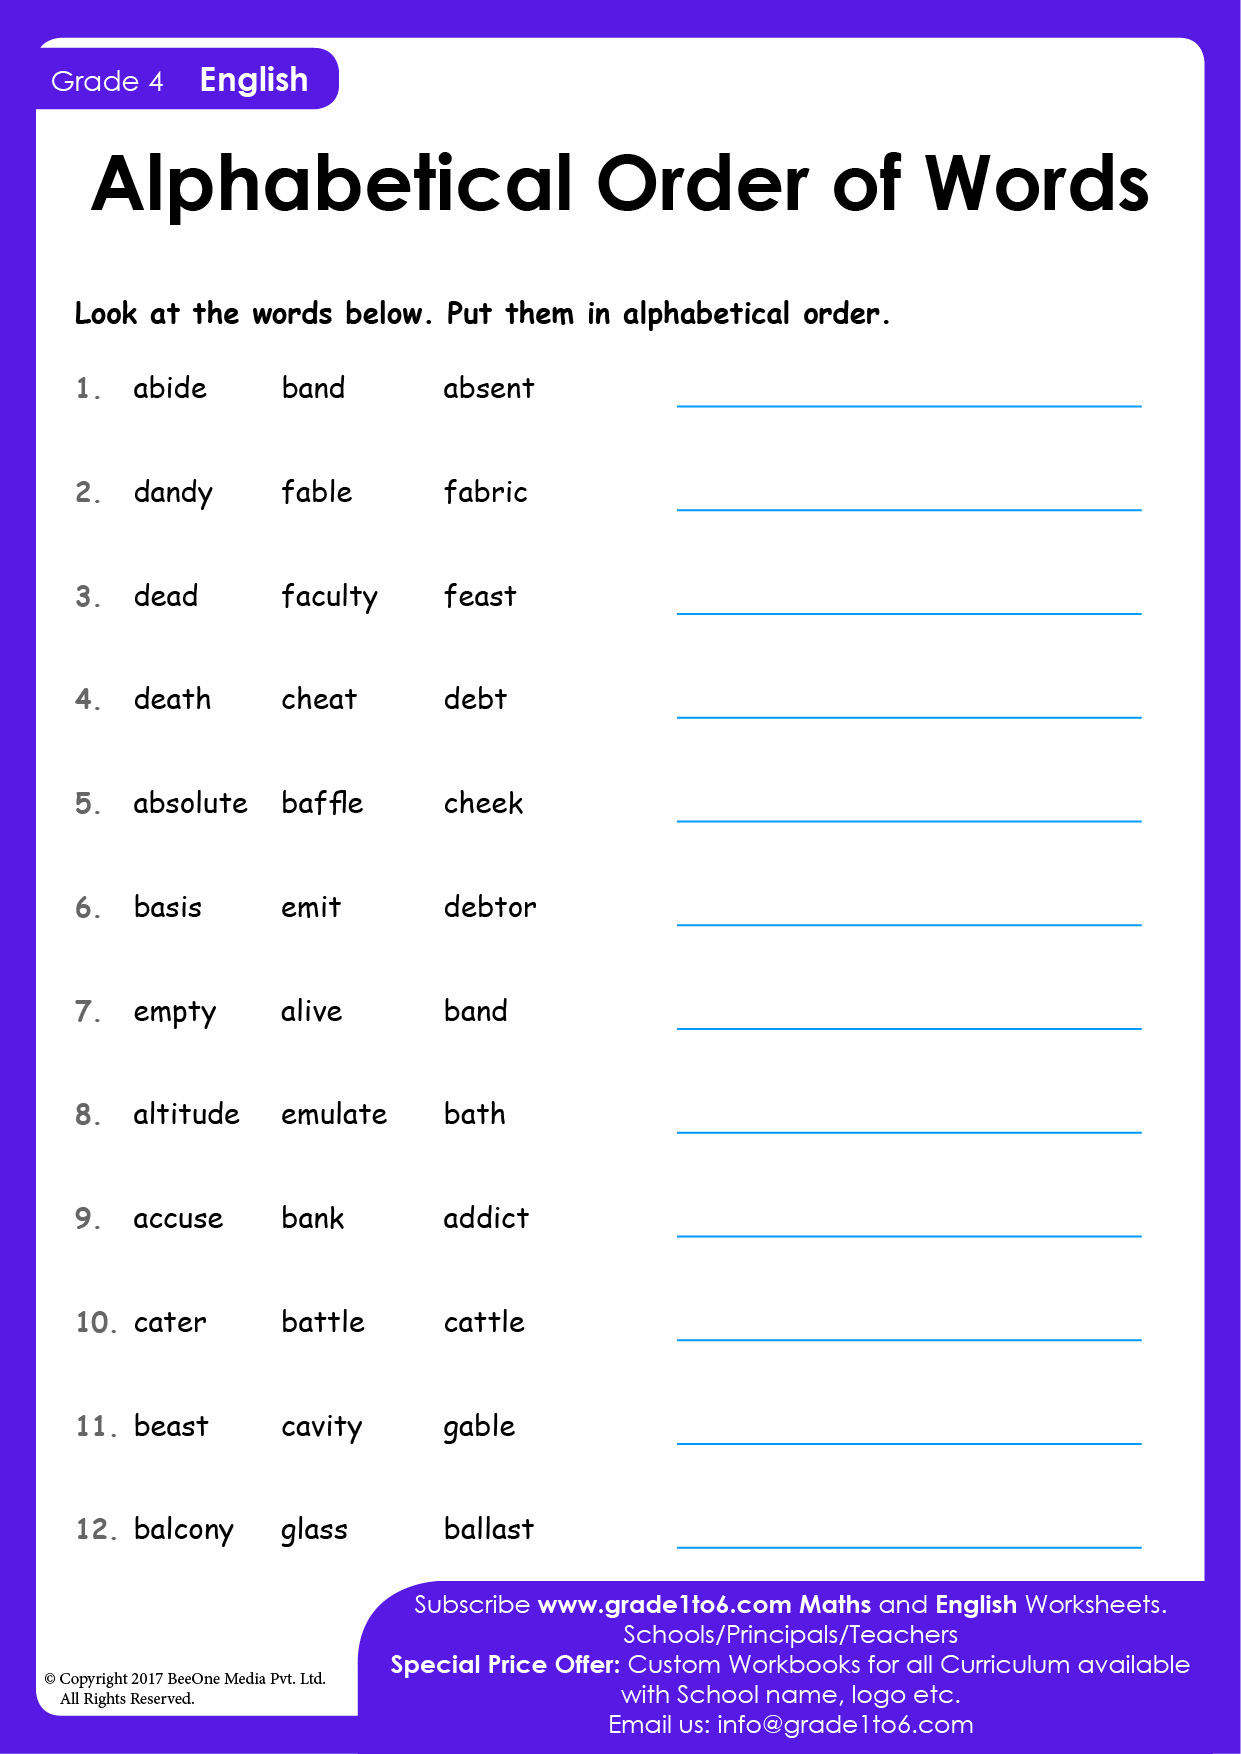 pdf for alphabetizing spelling words